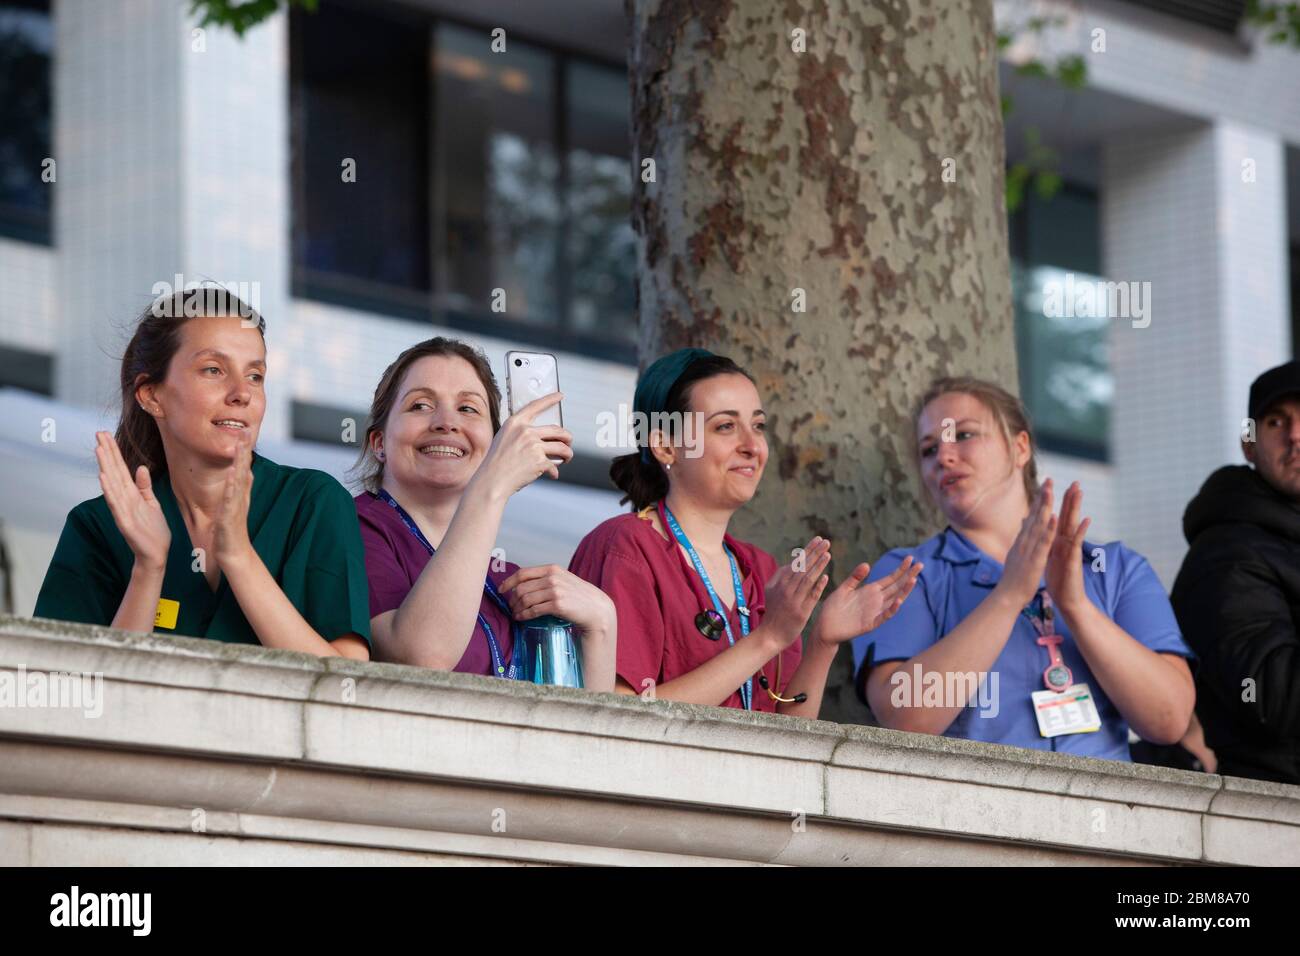 Londres, Royaume-Uni, 7 mai 2020 : le personnel de l'hôpital NHS St Thomas se réunit sur le mur qui fait face à la Tamise jusqu'au Parlement, où ils ont applaudi et applaudi pour leurs efforts dévoués pour traiter les victimes de la pandémie COVID-19. Anna Watson/Alay Live News Banque D'Images